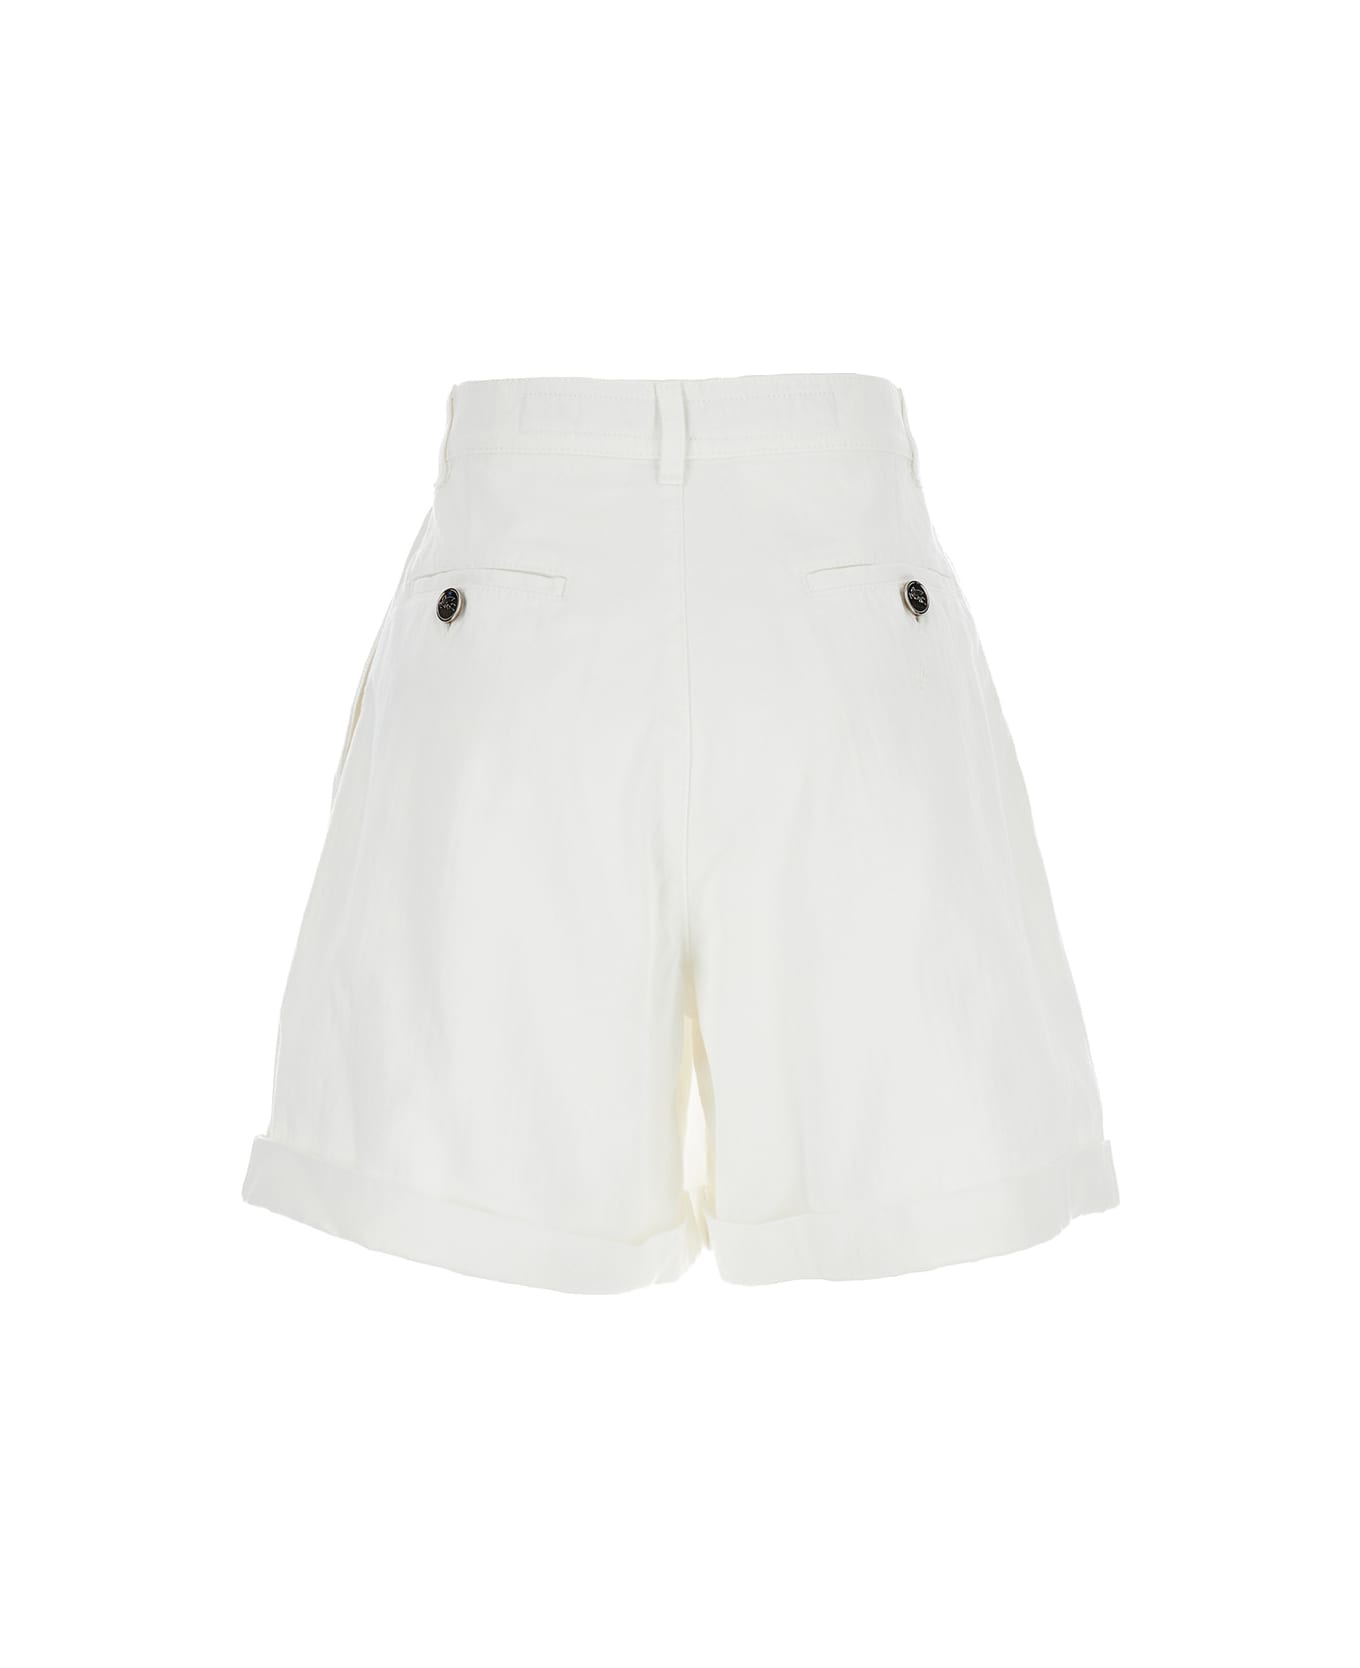 Etro White Bermuda Shorts In Cotton Woman - White